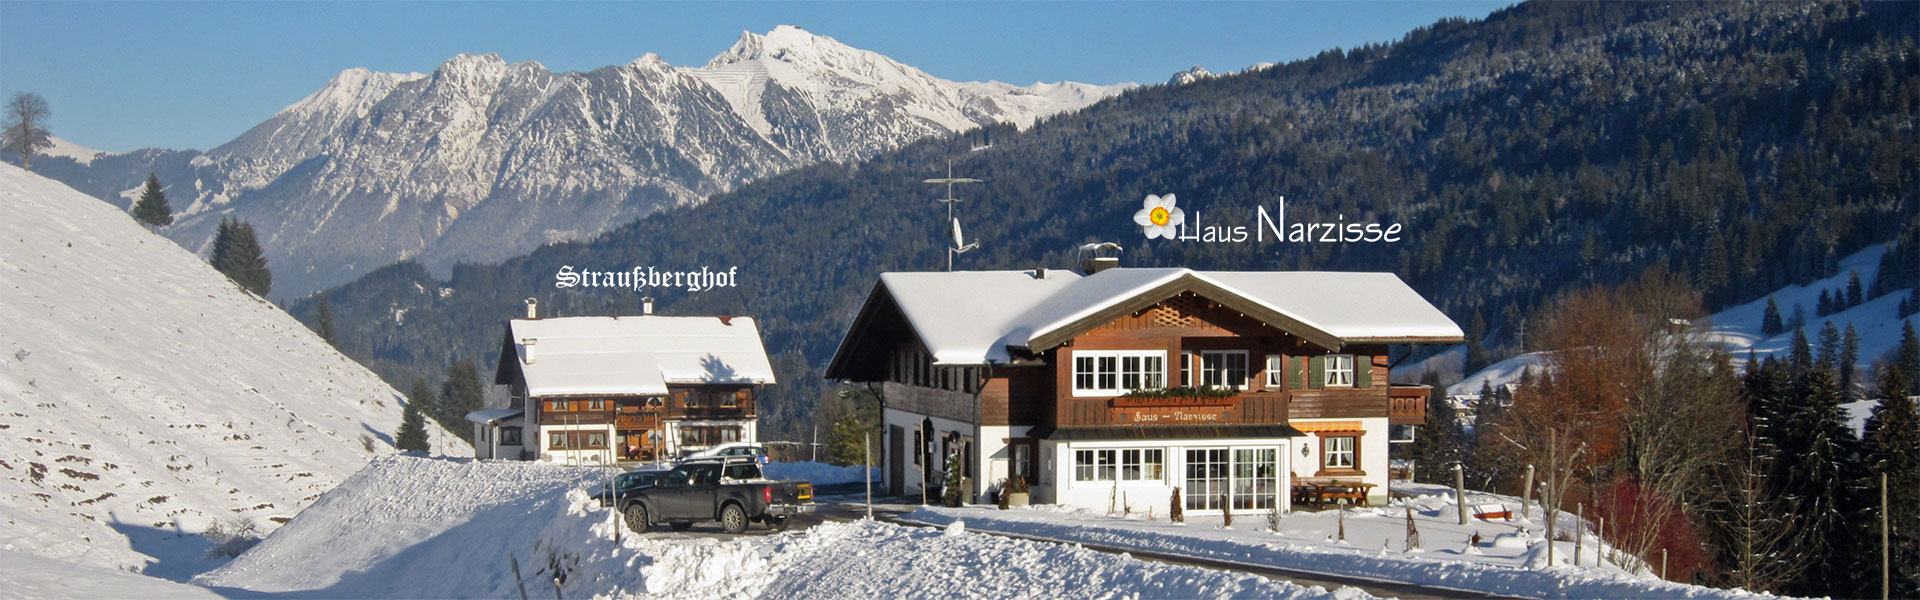 Haus Narzisse und Straußberghof im Winter - Ferienwohnungen Kleinwalsertal - Ruhige Lage